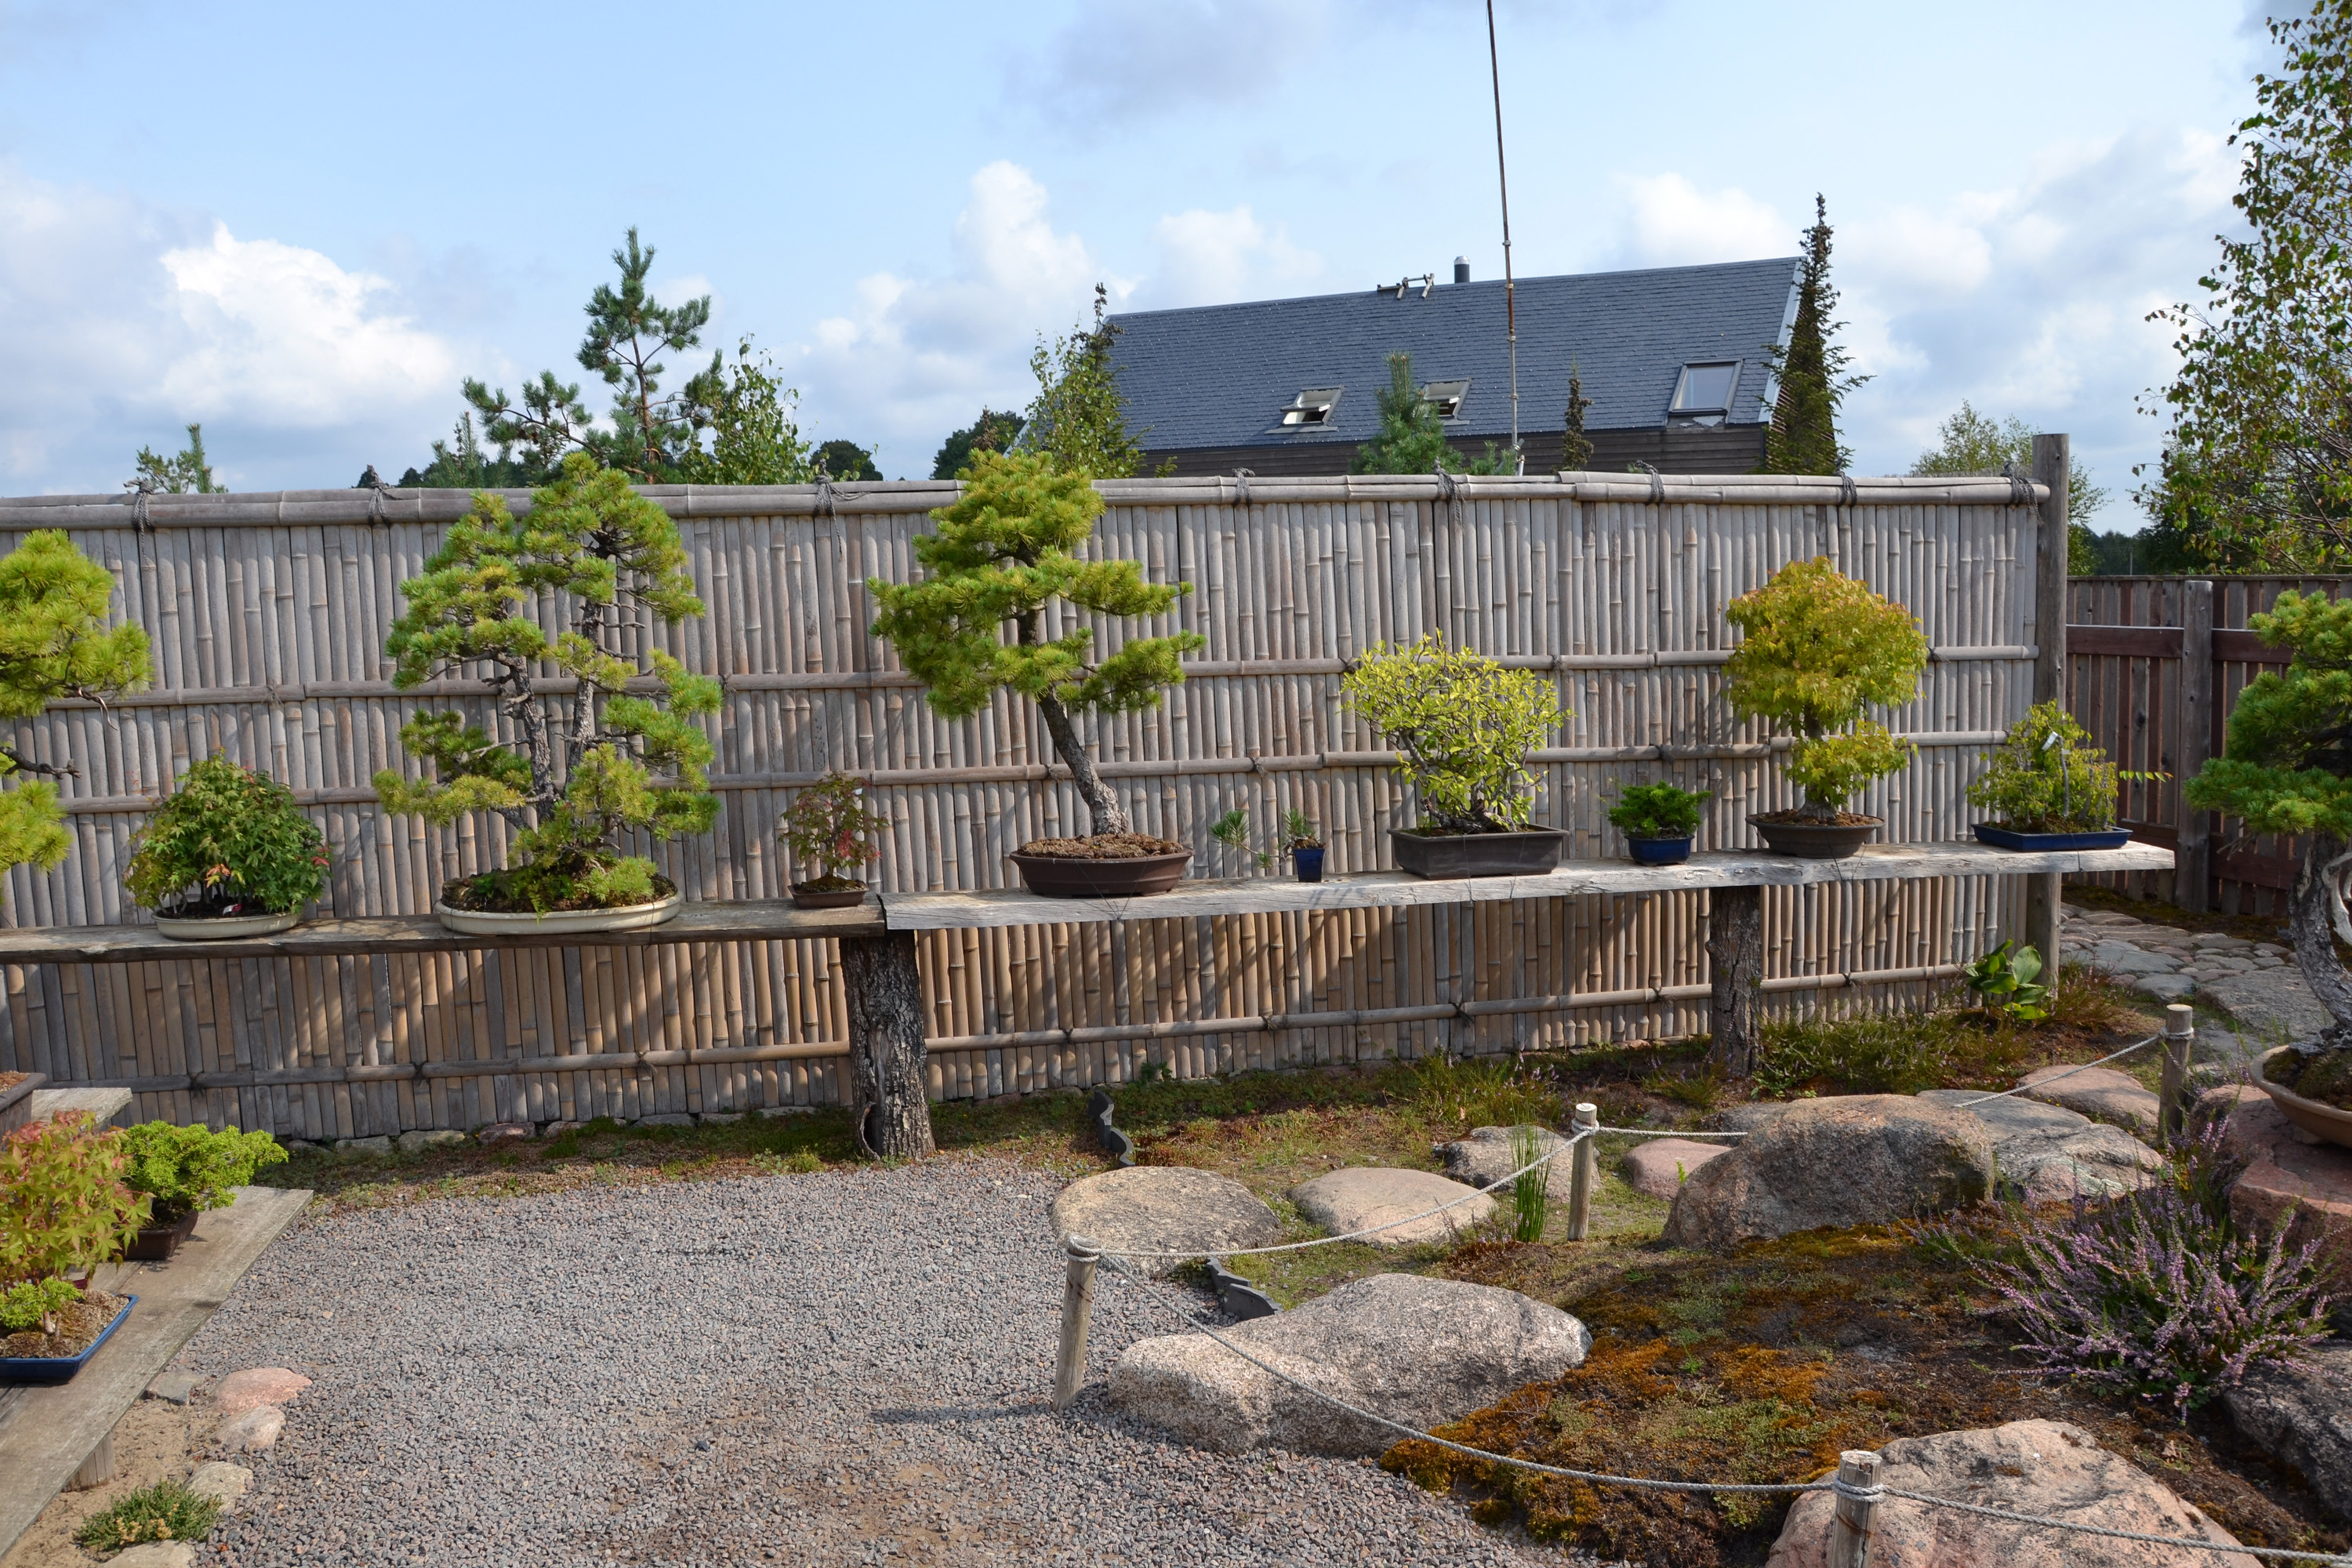 Bonsai garden photo